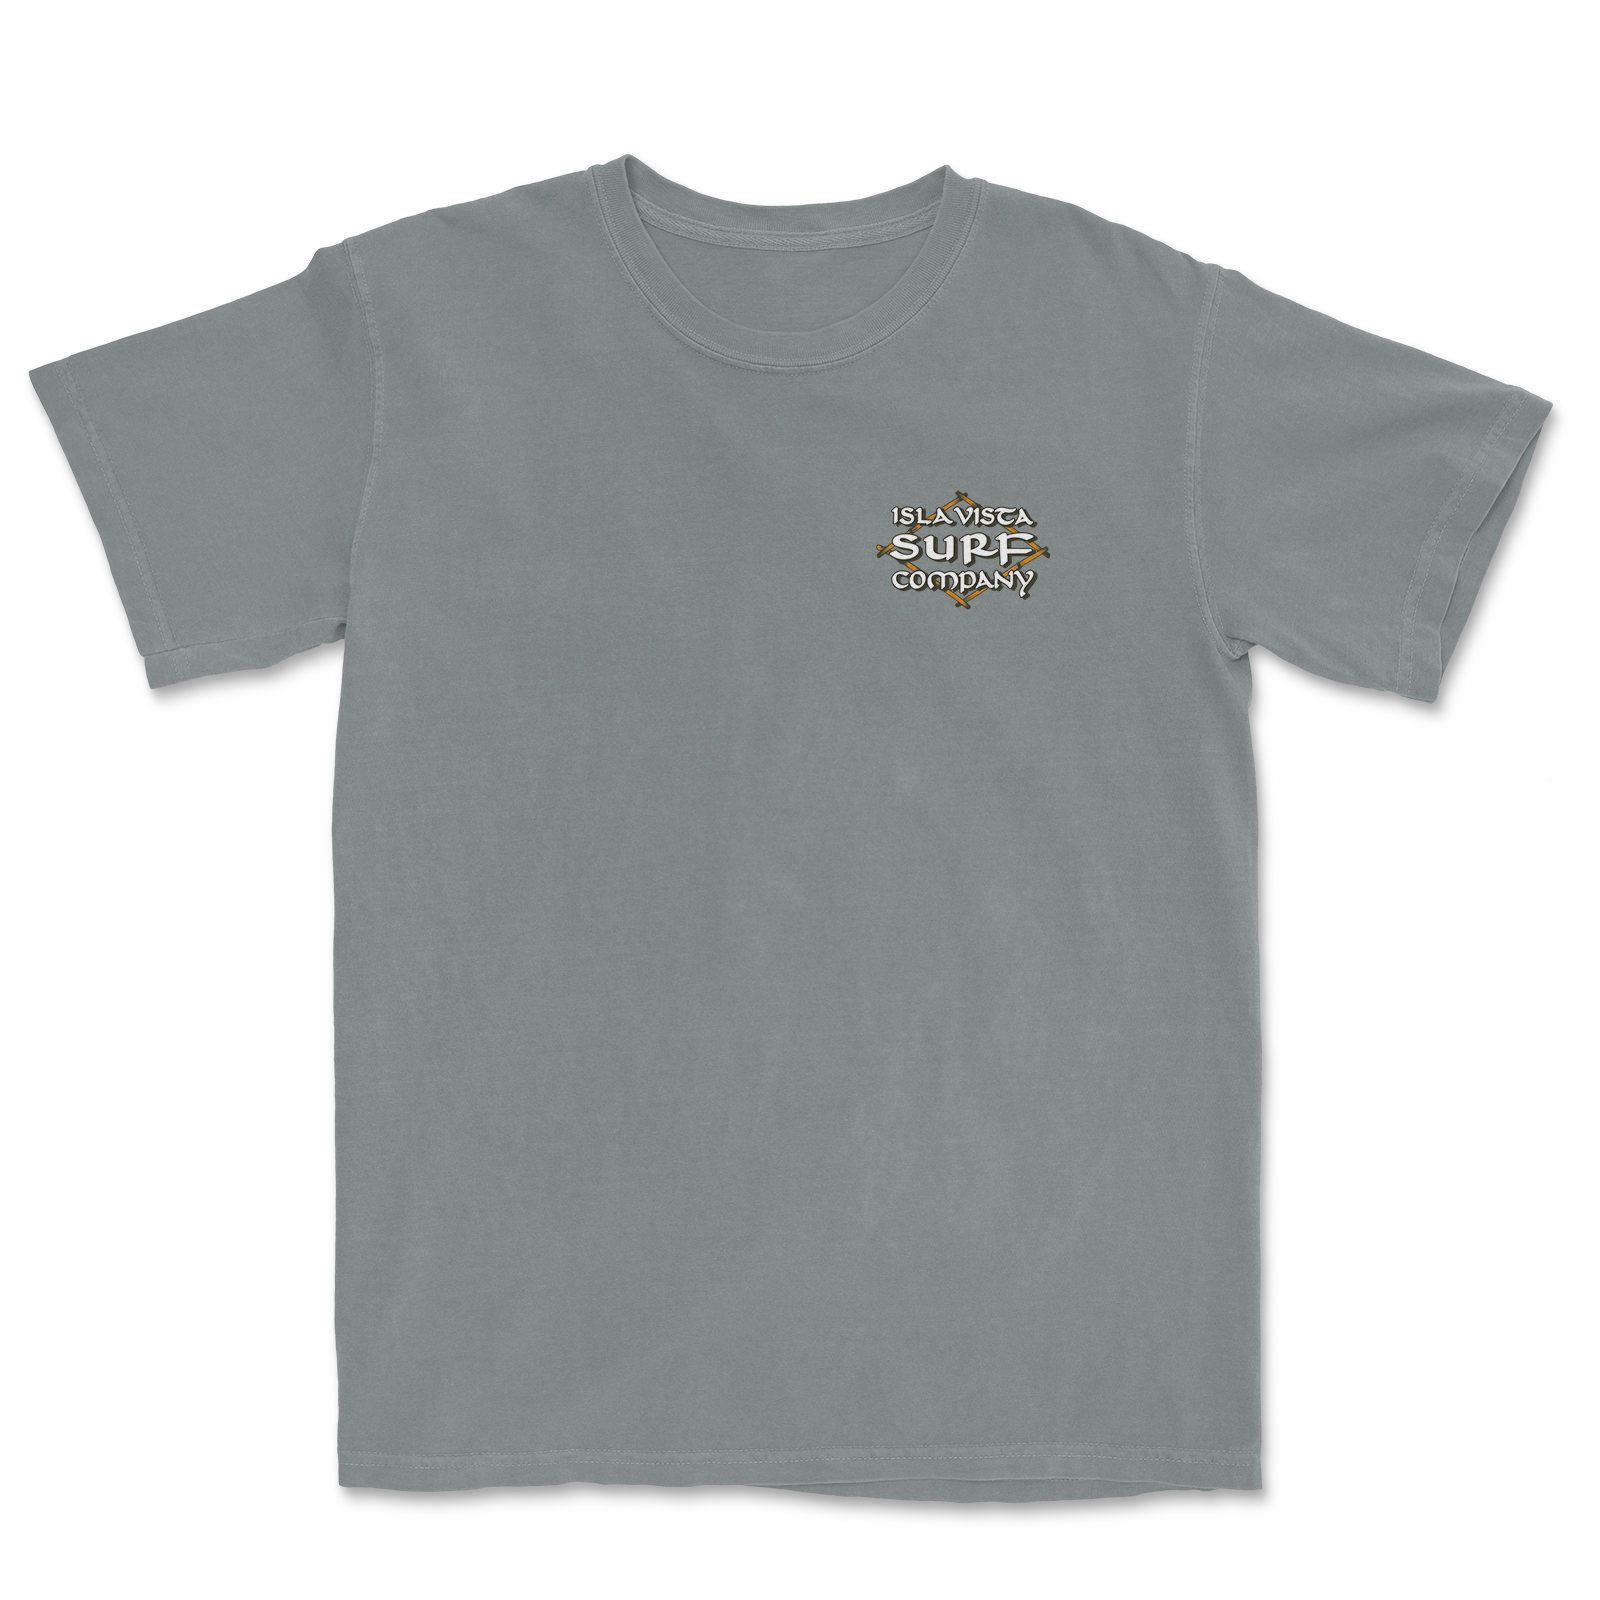 Arctic Fox T-Shirt Men's - OutfitterSSM